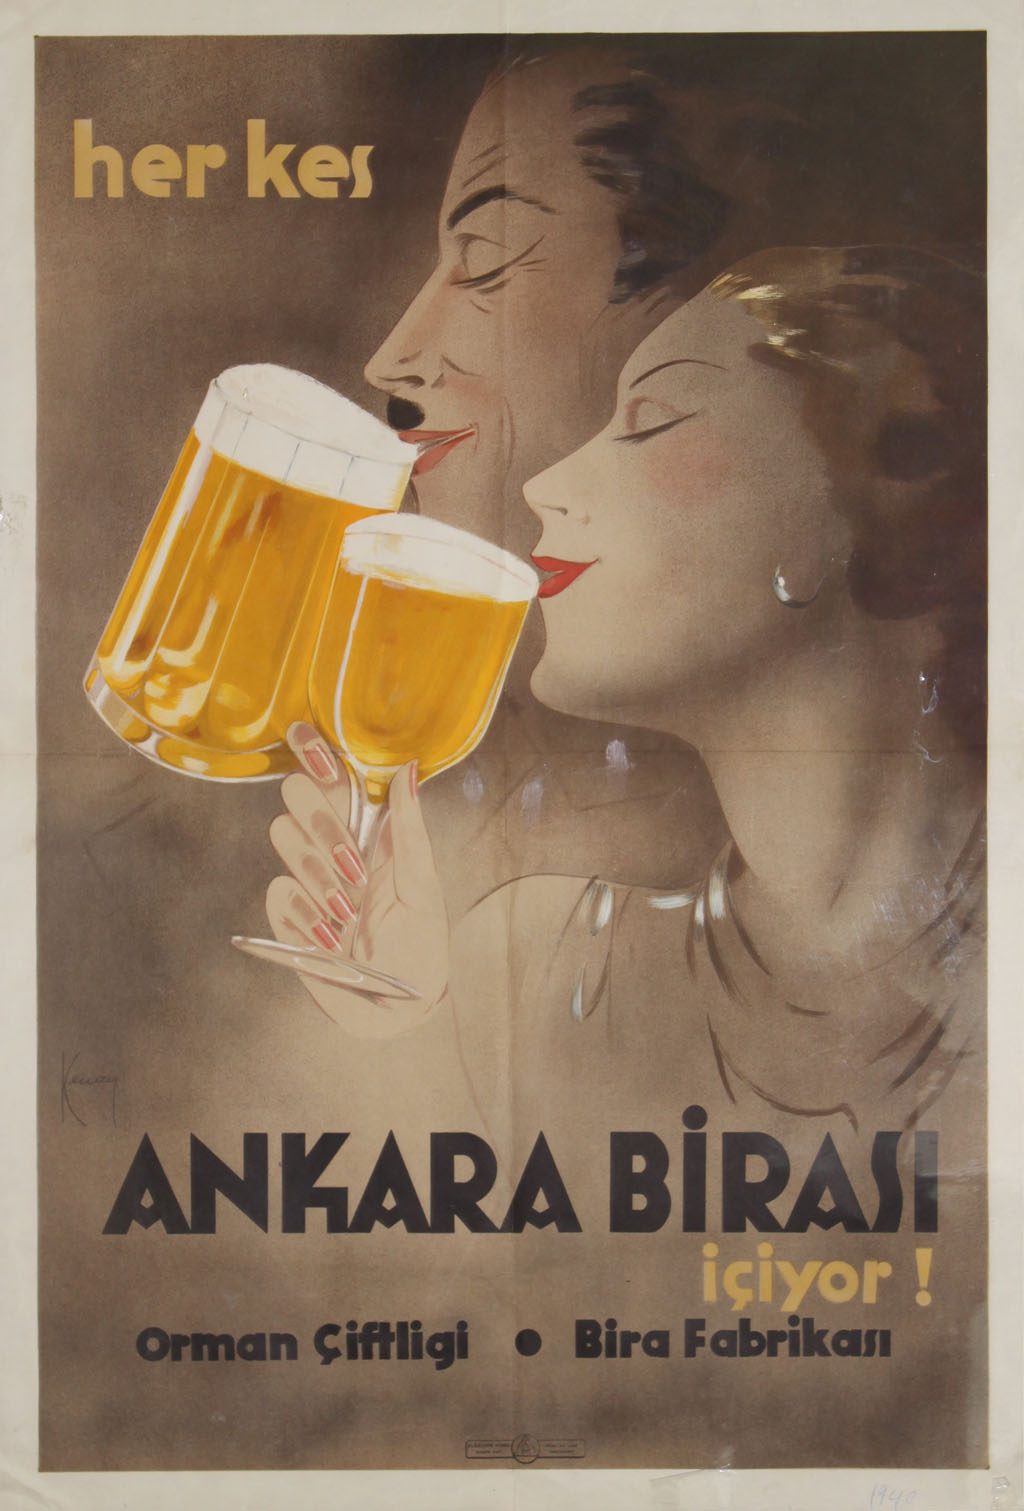 Ankara Birası reklam afişi, 1930'lar.